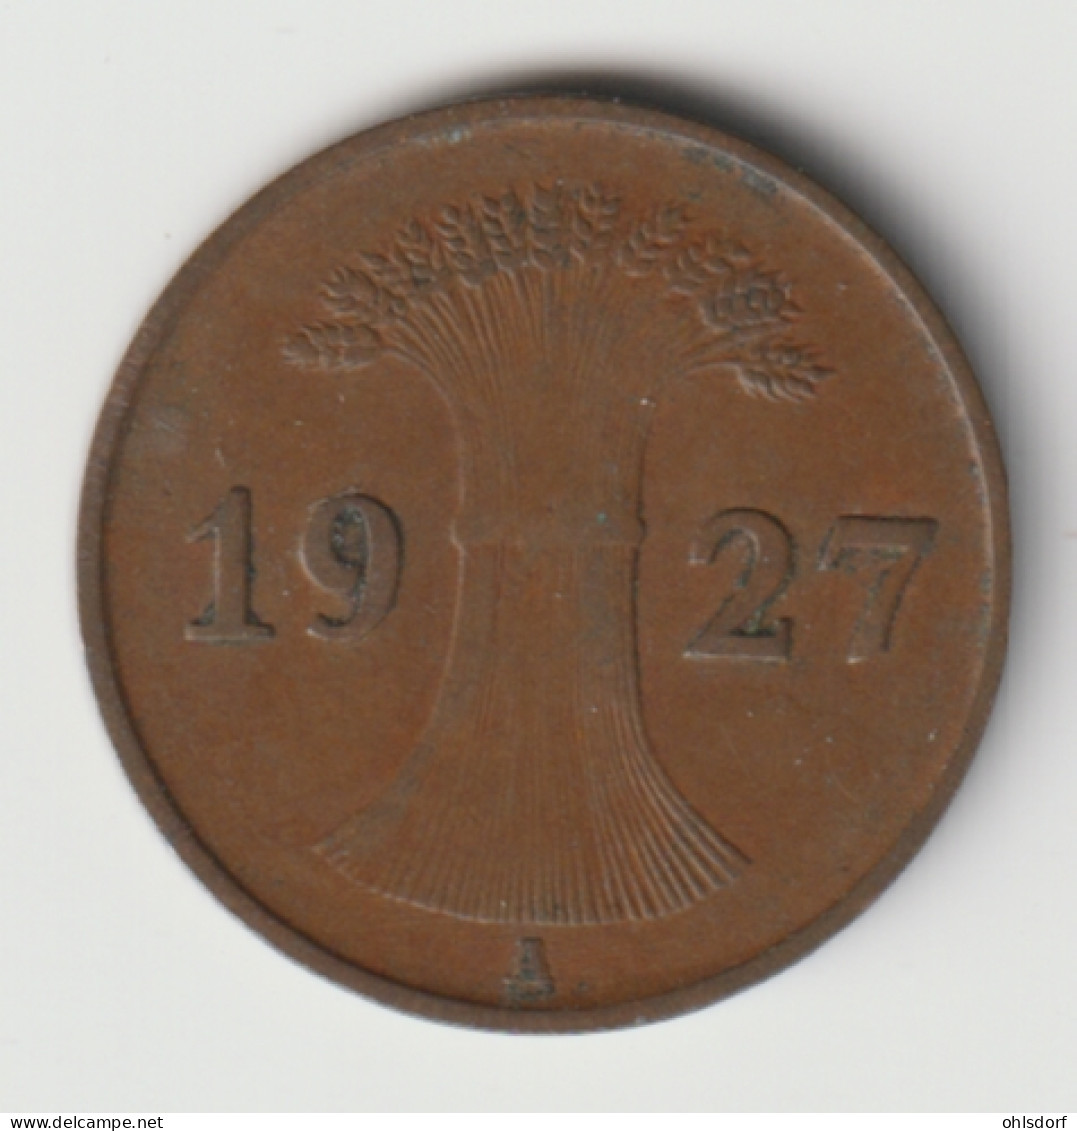 DEUTSCHES REICH 1927 A: 1 Reichspfennig, KM 37 - 1 Renten- & 1 Reichspfennig